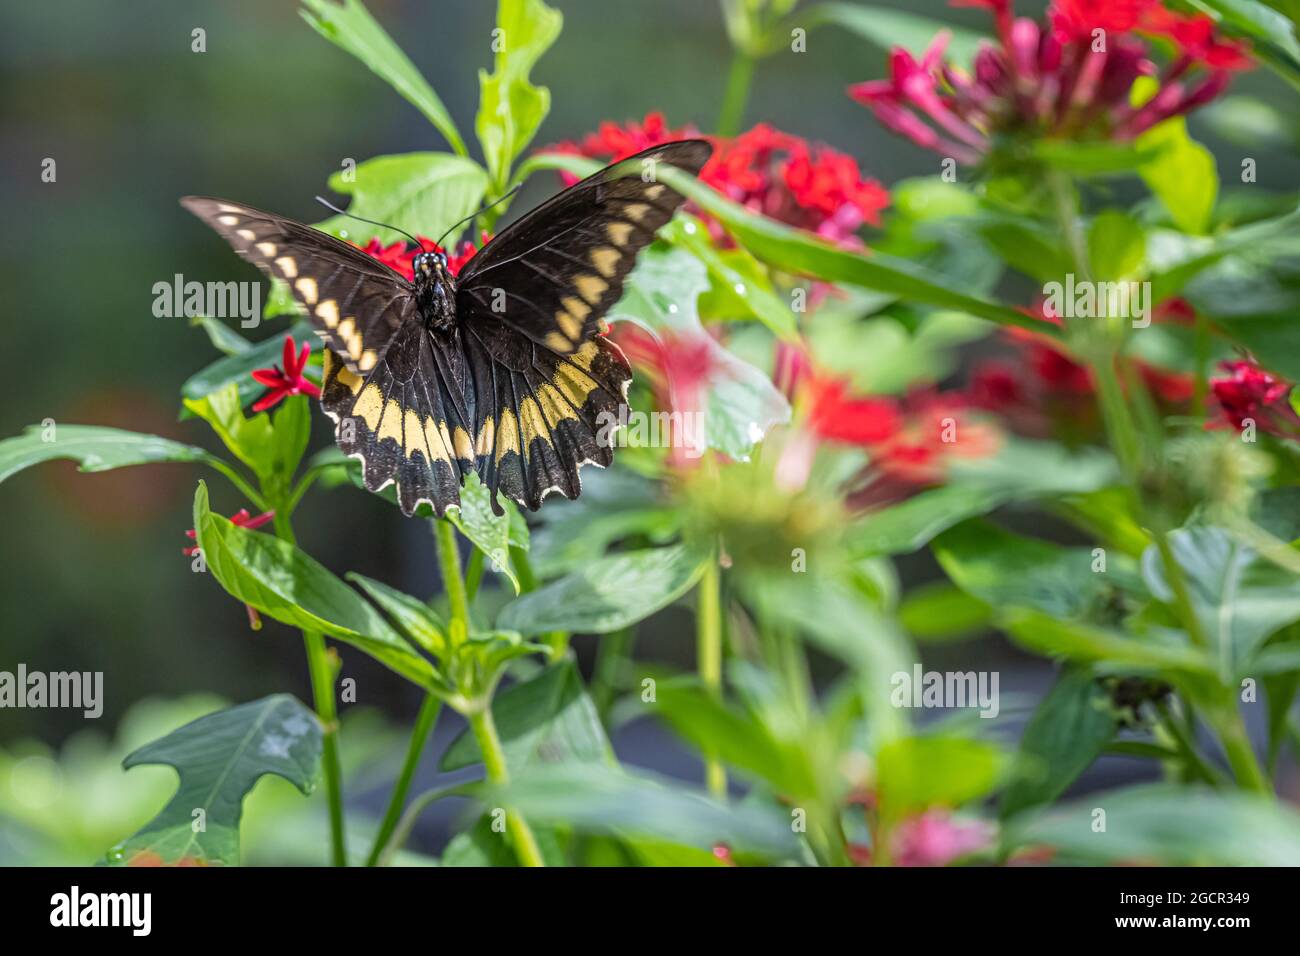 Papillon noir et jaune dans le jardin des papillons du parc national Washington Oaks Gardens à Palm Coast, Floride. (ÉTATS-UNIS) Banque D'Images